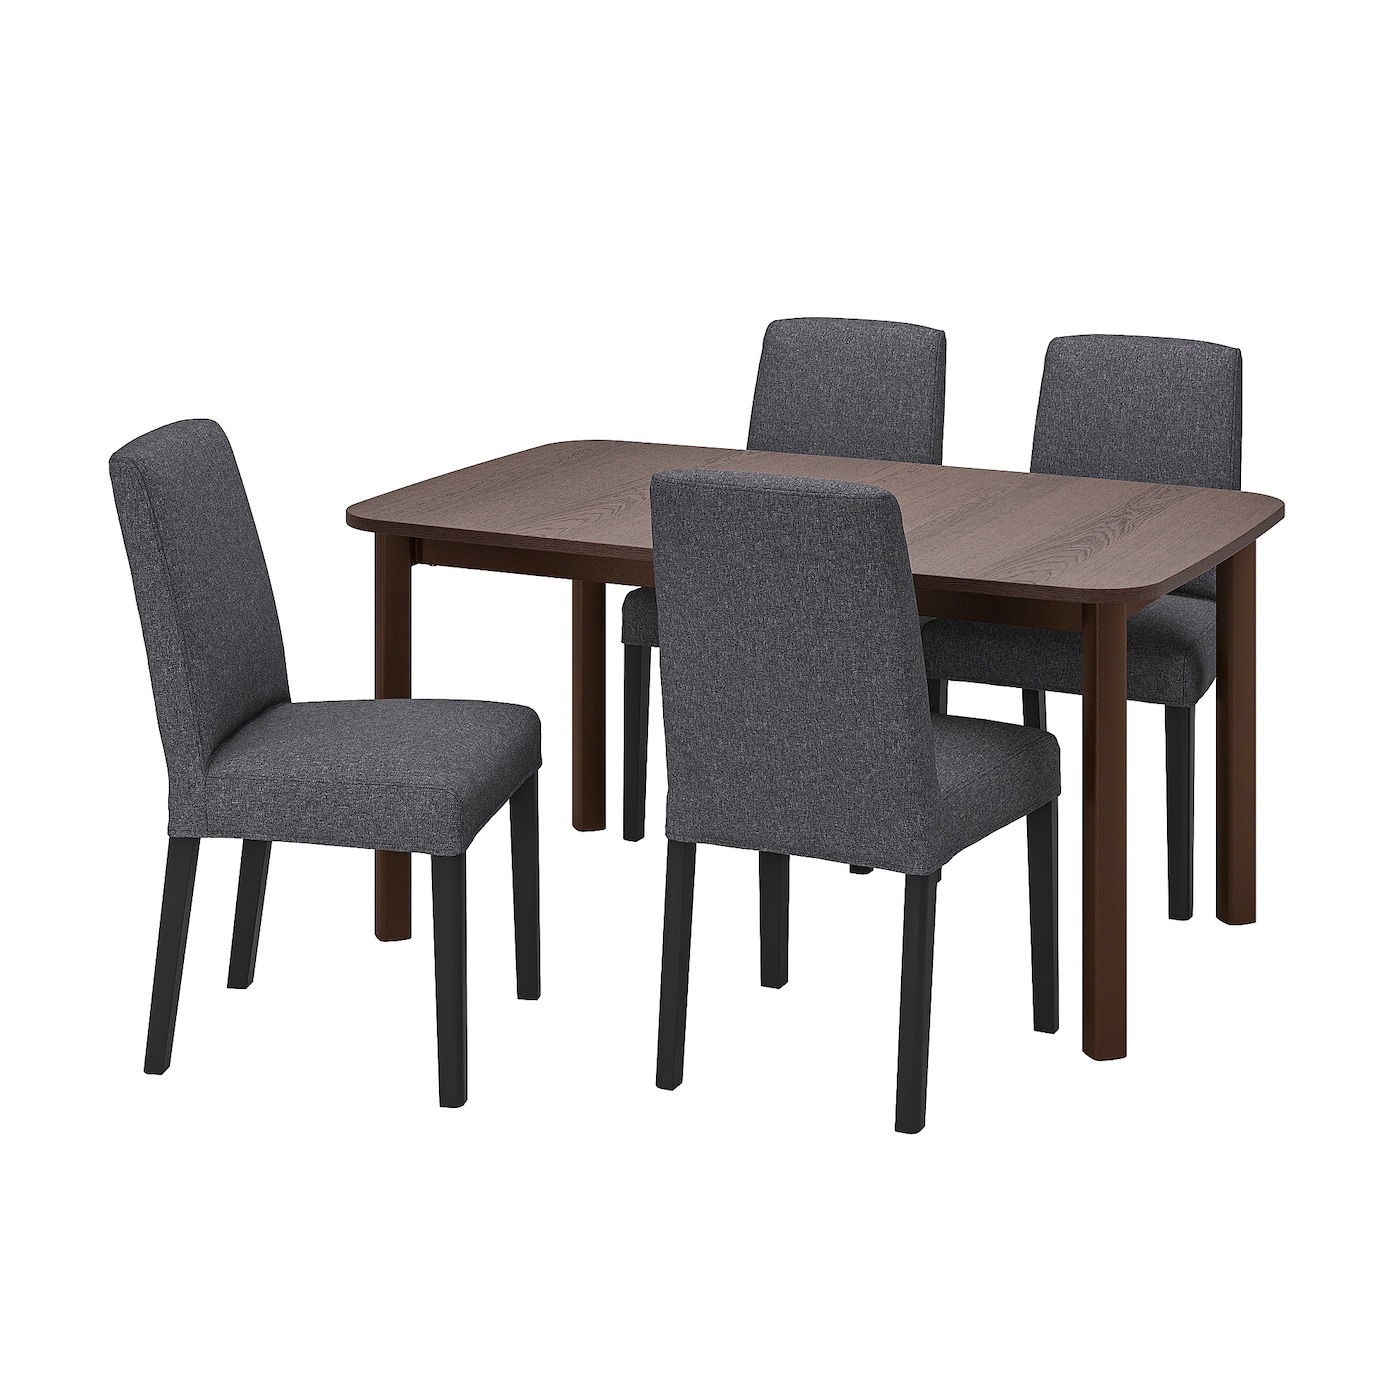 Стол и 4 стула - STRANDTORP / BERGMUND IKEA/ СТРАНДТОРП/БЕРГМУНД ИКЕА, 205х95х75 см, коричневый/серый